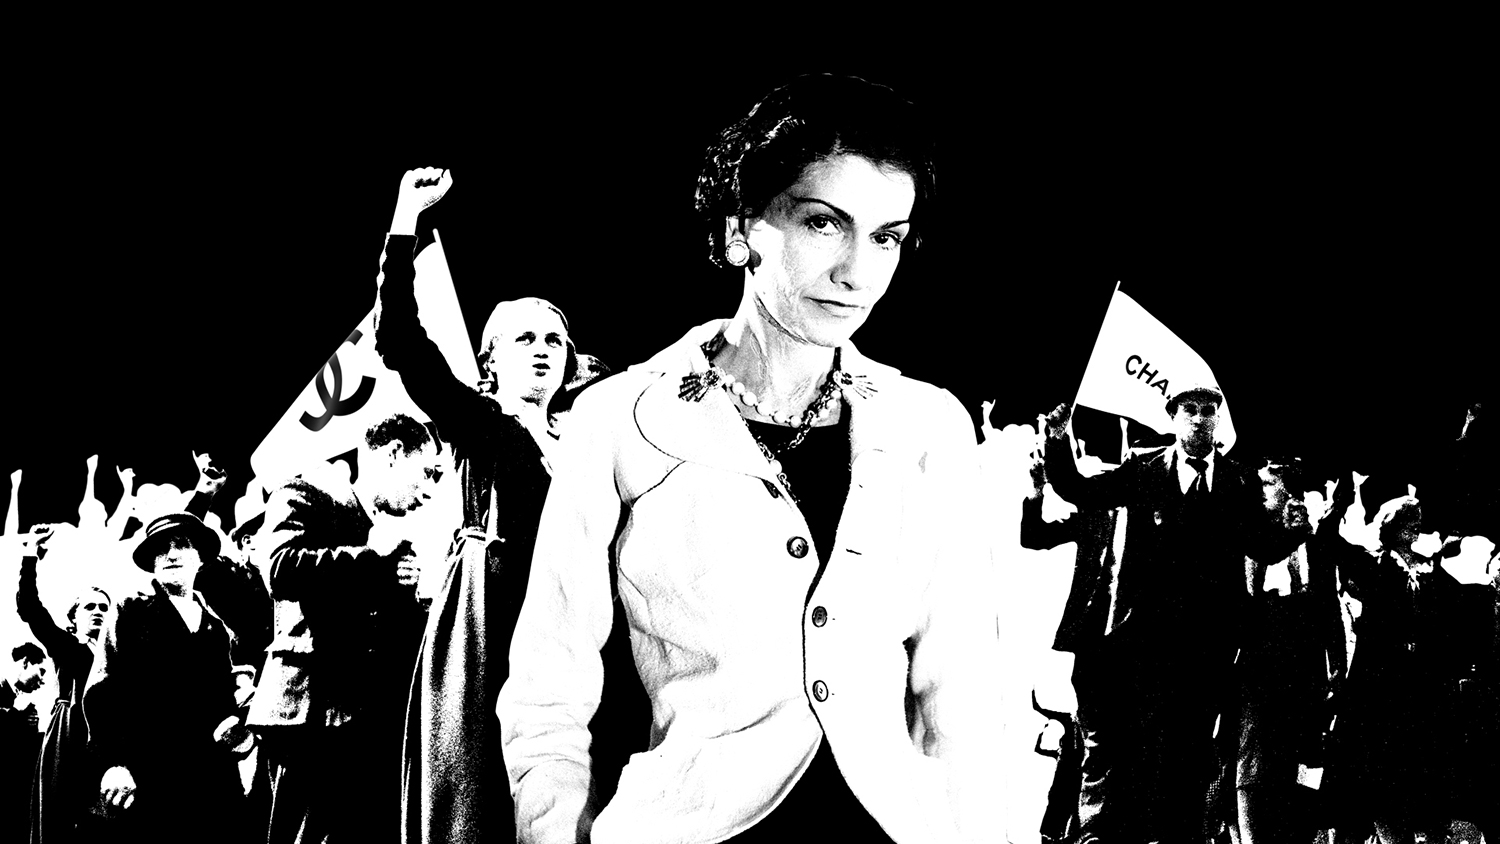 ВІДЕО: історія бунтарської натури Габріель Шанель - фото